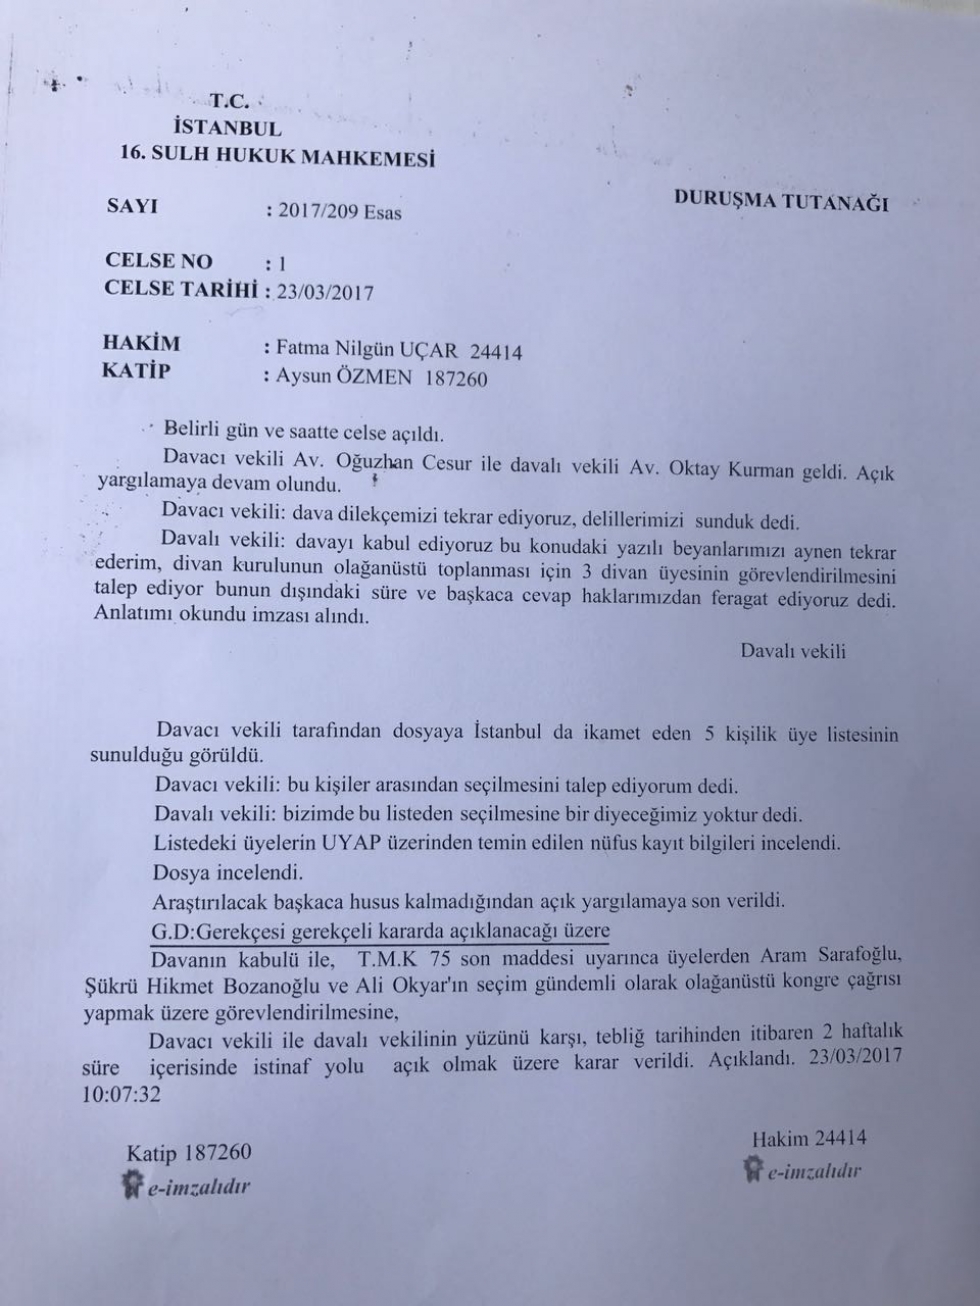 Beşiktaş Divan kurulu mahkeme kararı